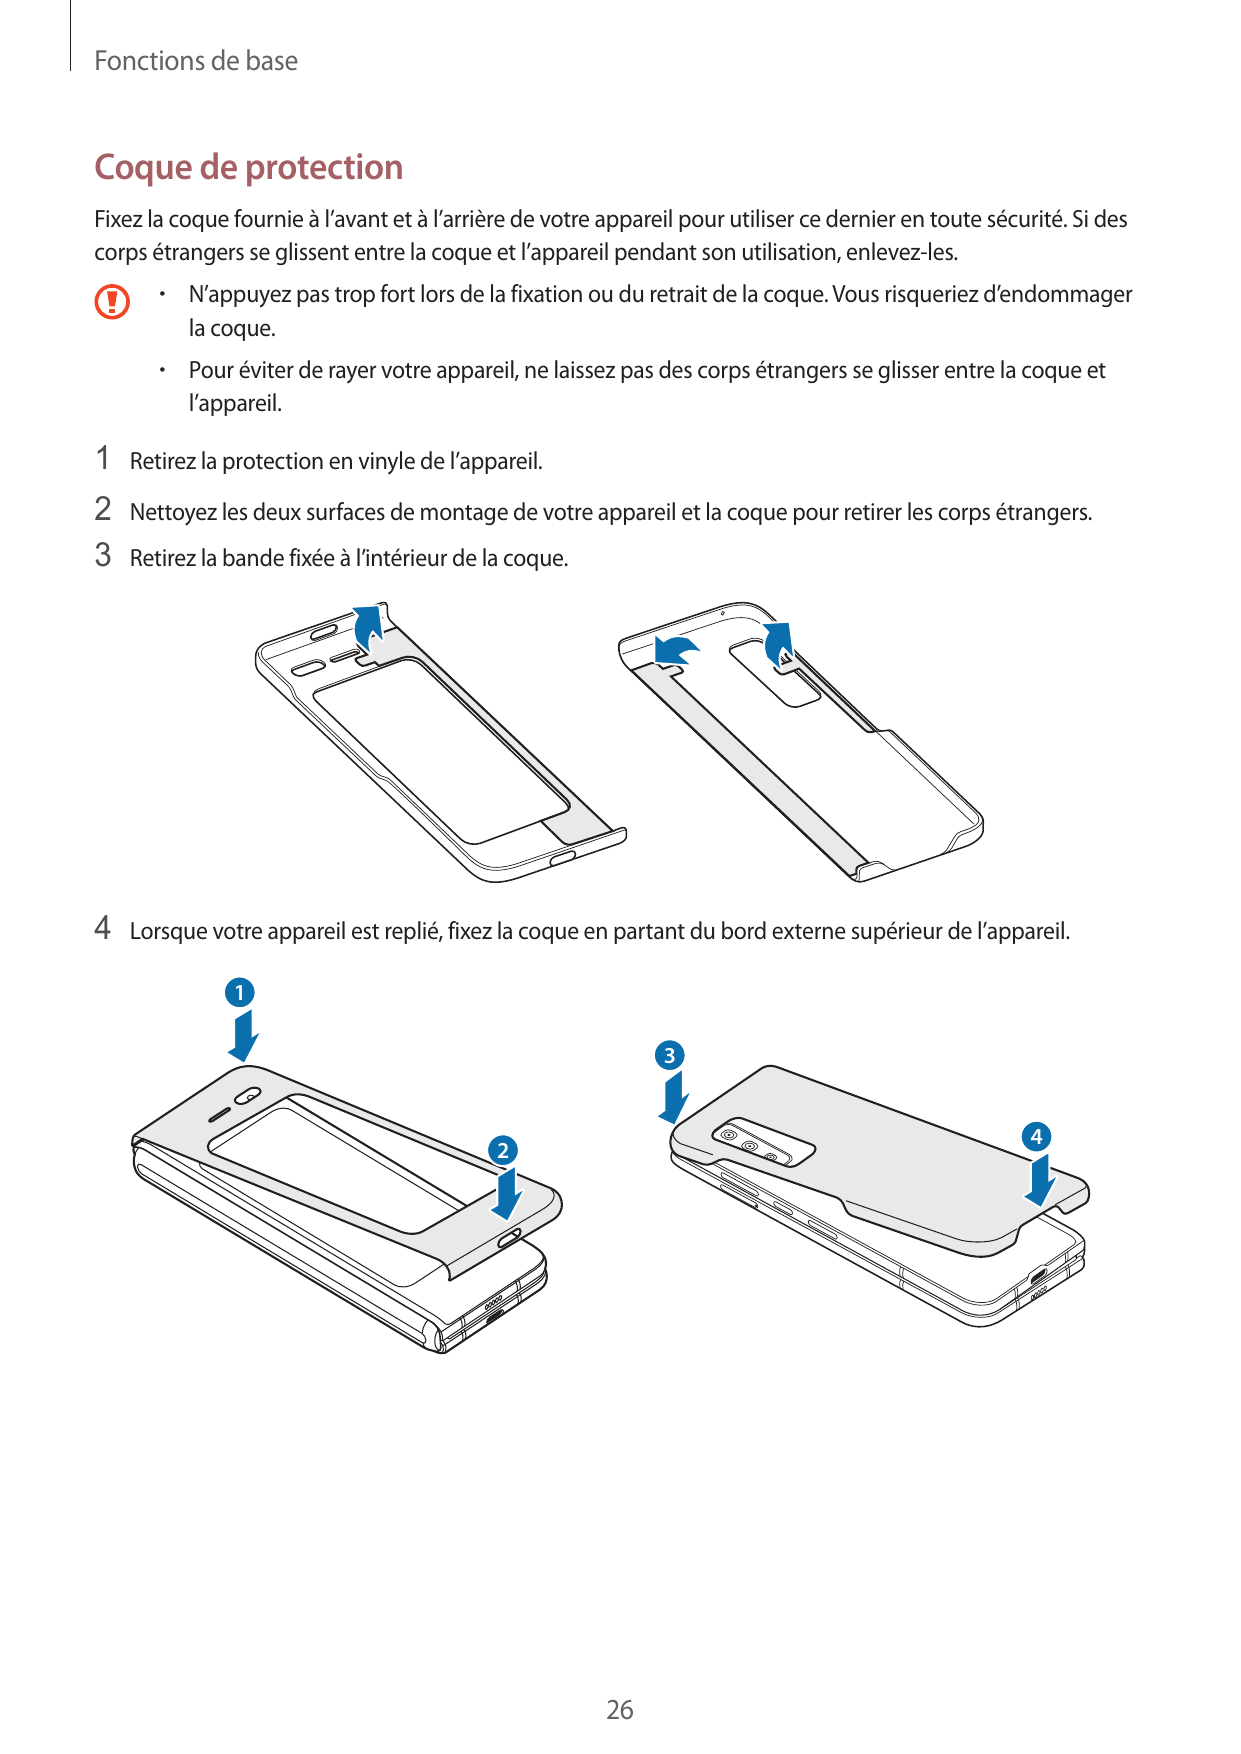 Fonctions de baseCoque de protectionFixez la coque fournie à l’avant et à l’arrière de votre appareil pour utiliser ce dernier e